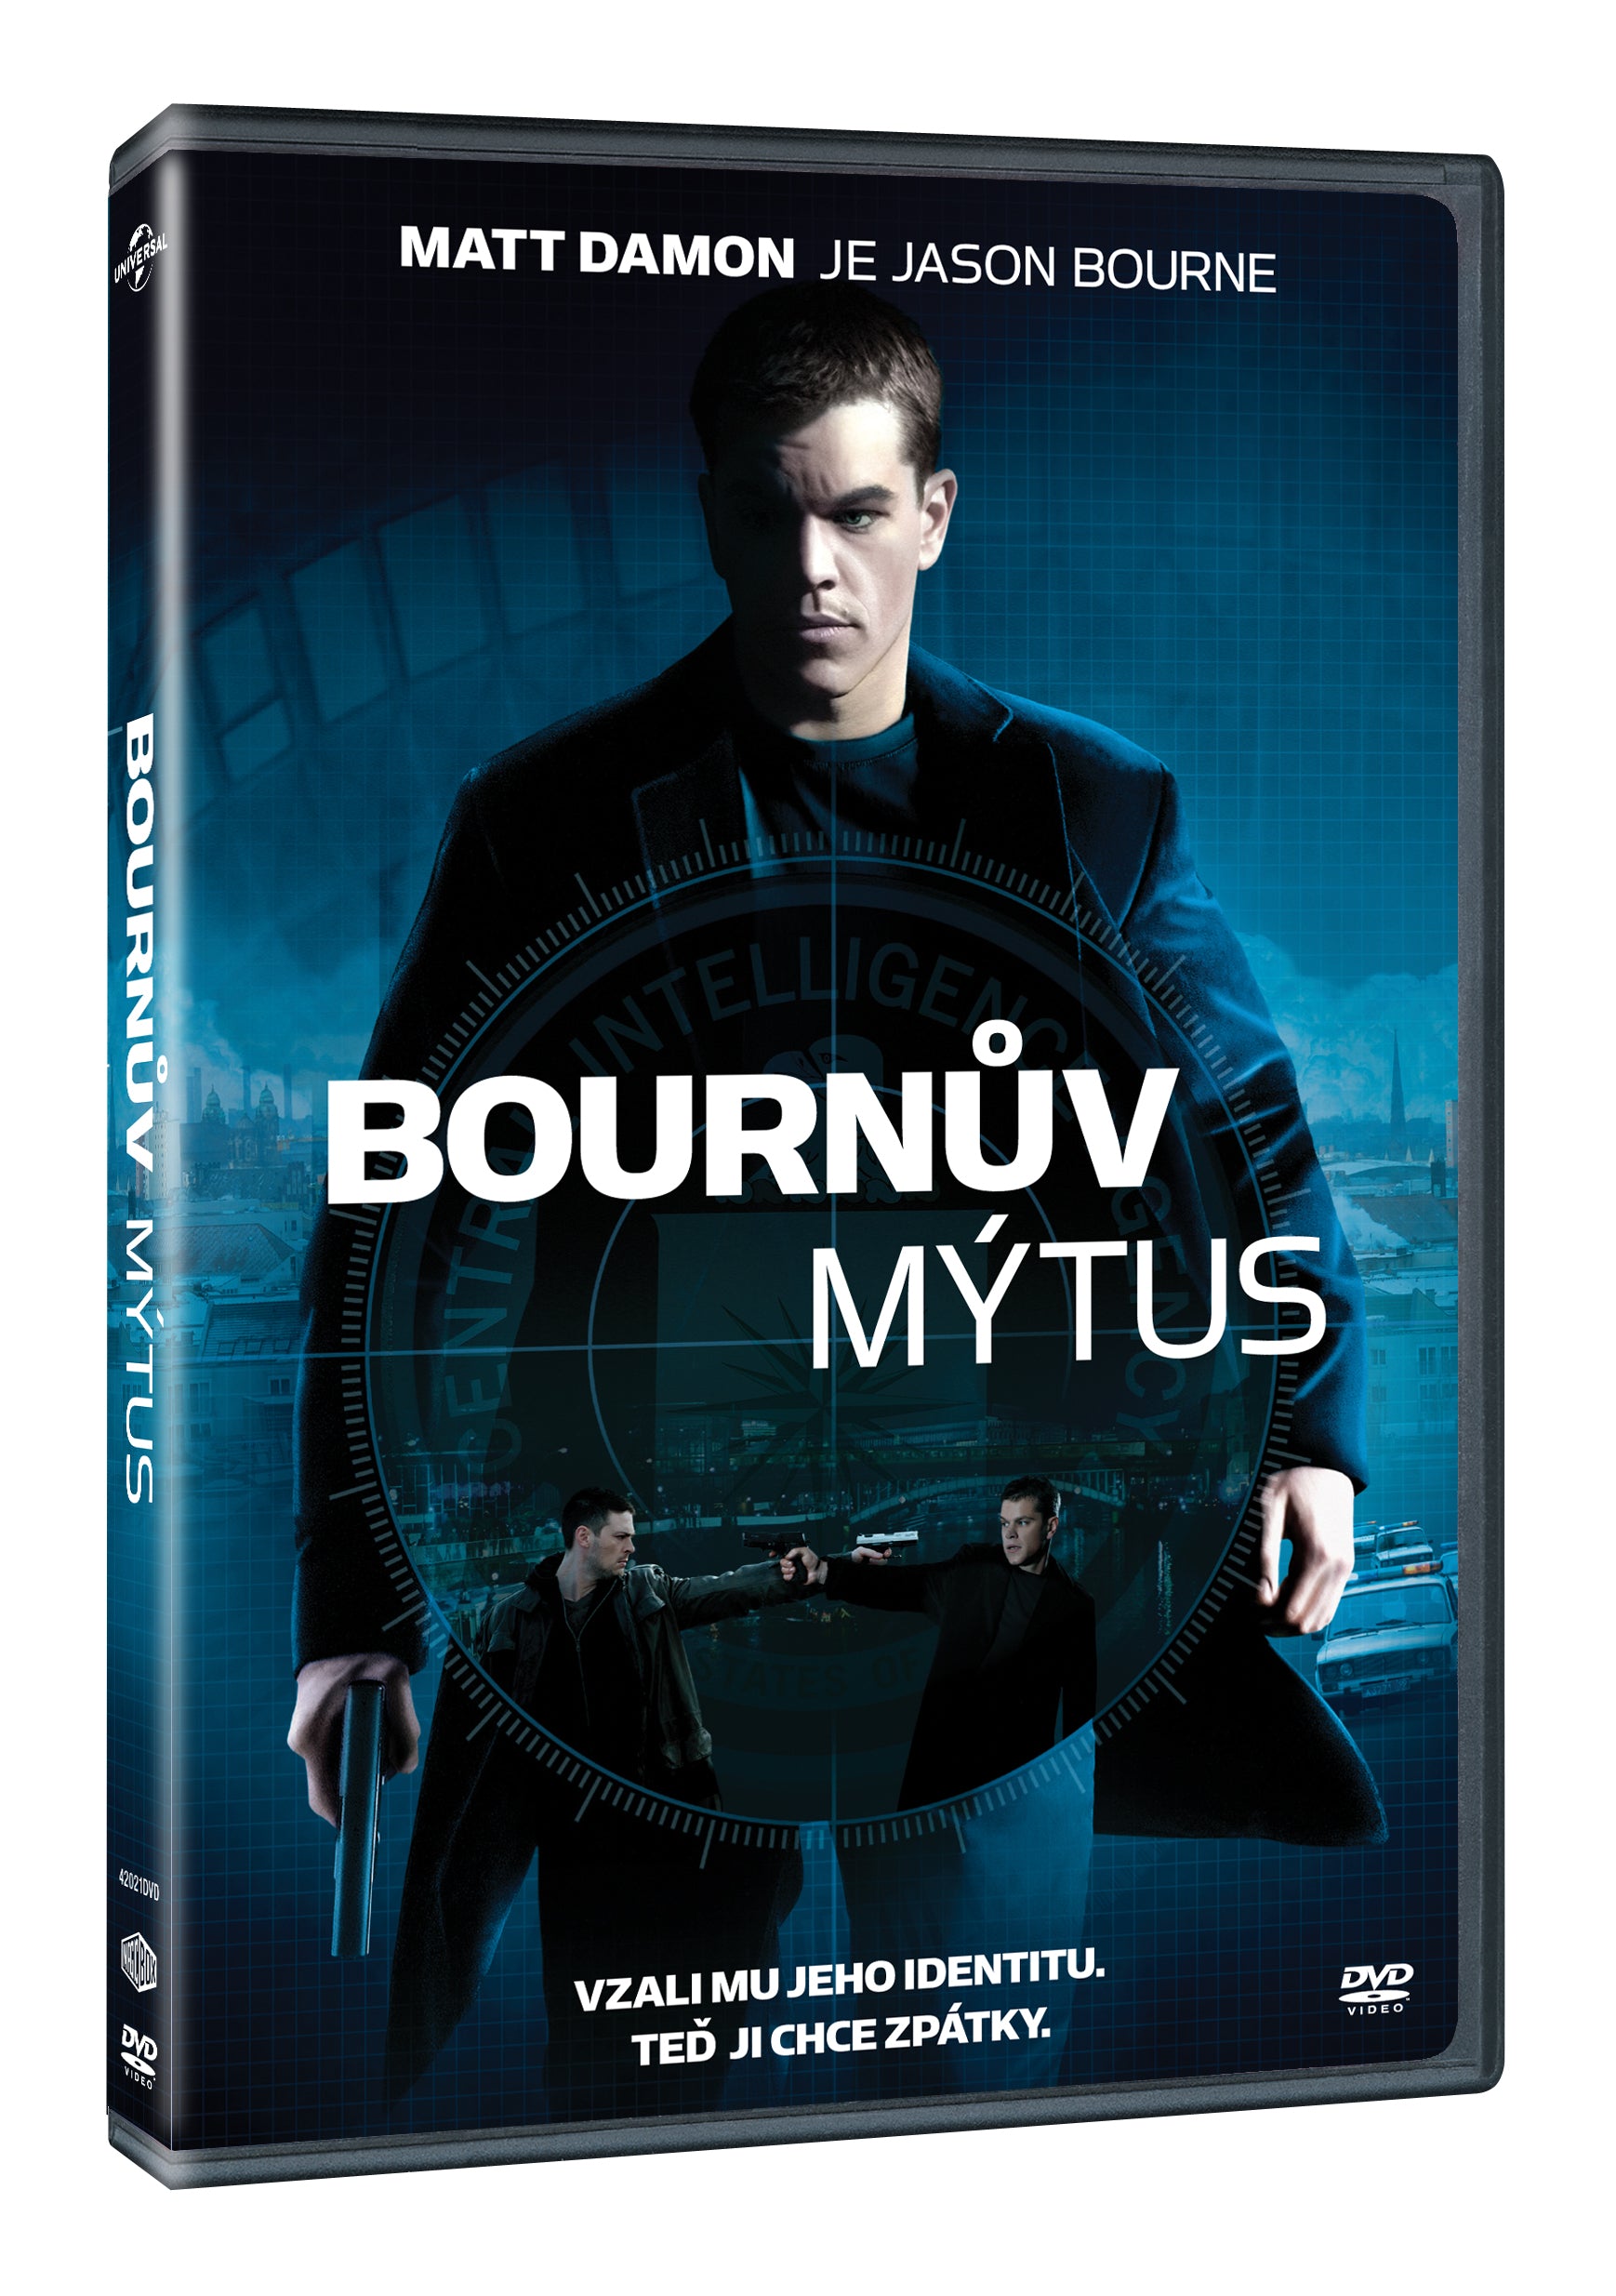 Bournuv mytus DVD / The Bourne Supremacy